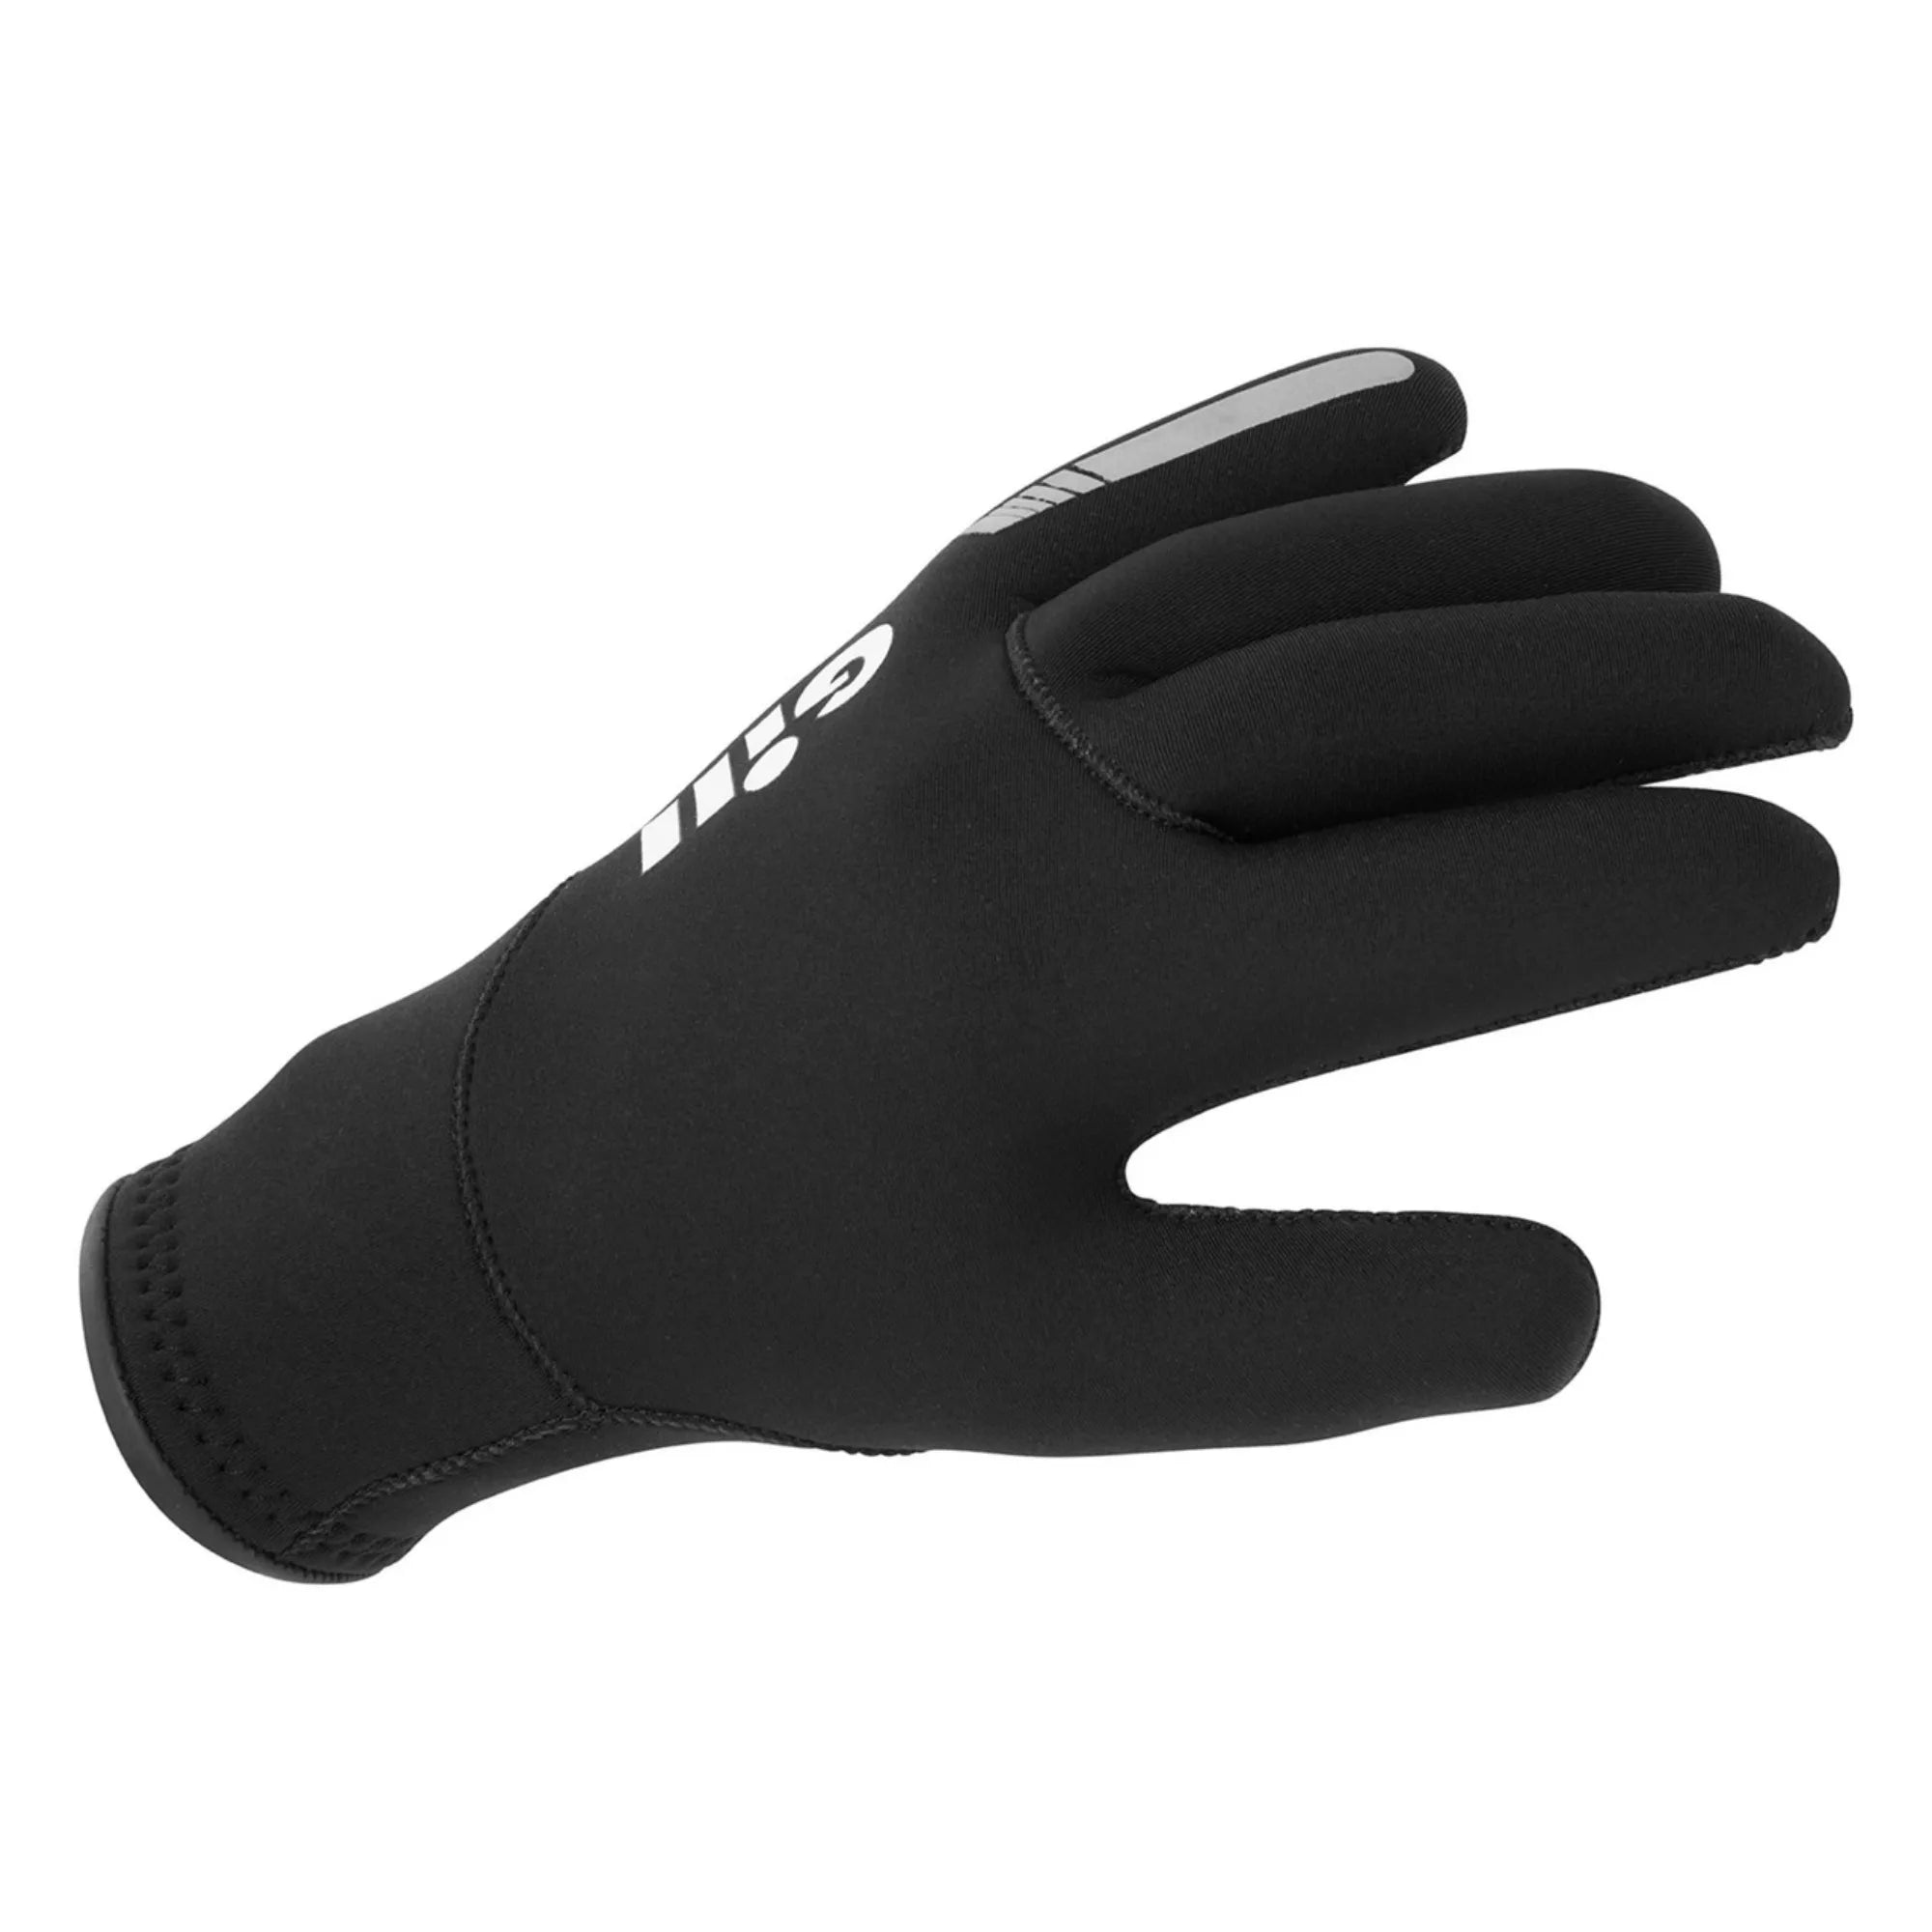 Neoprene Gloves - Black